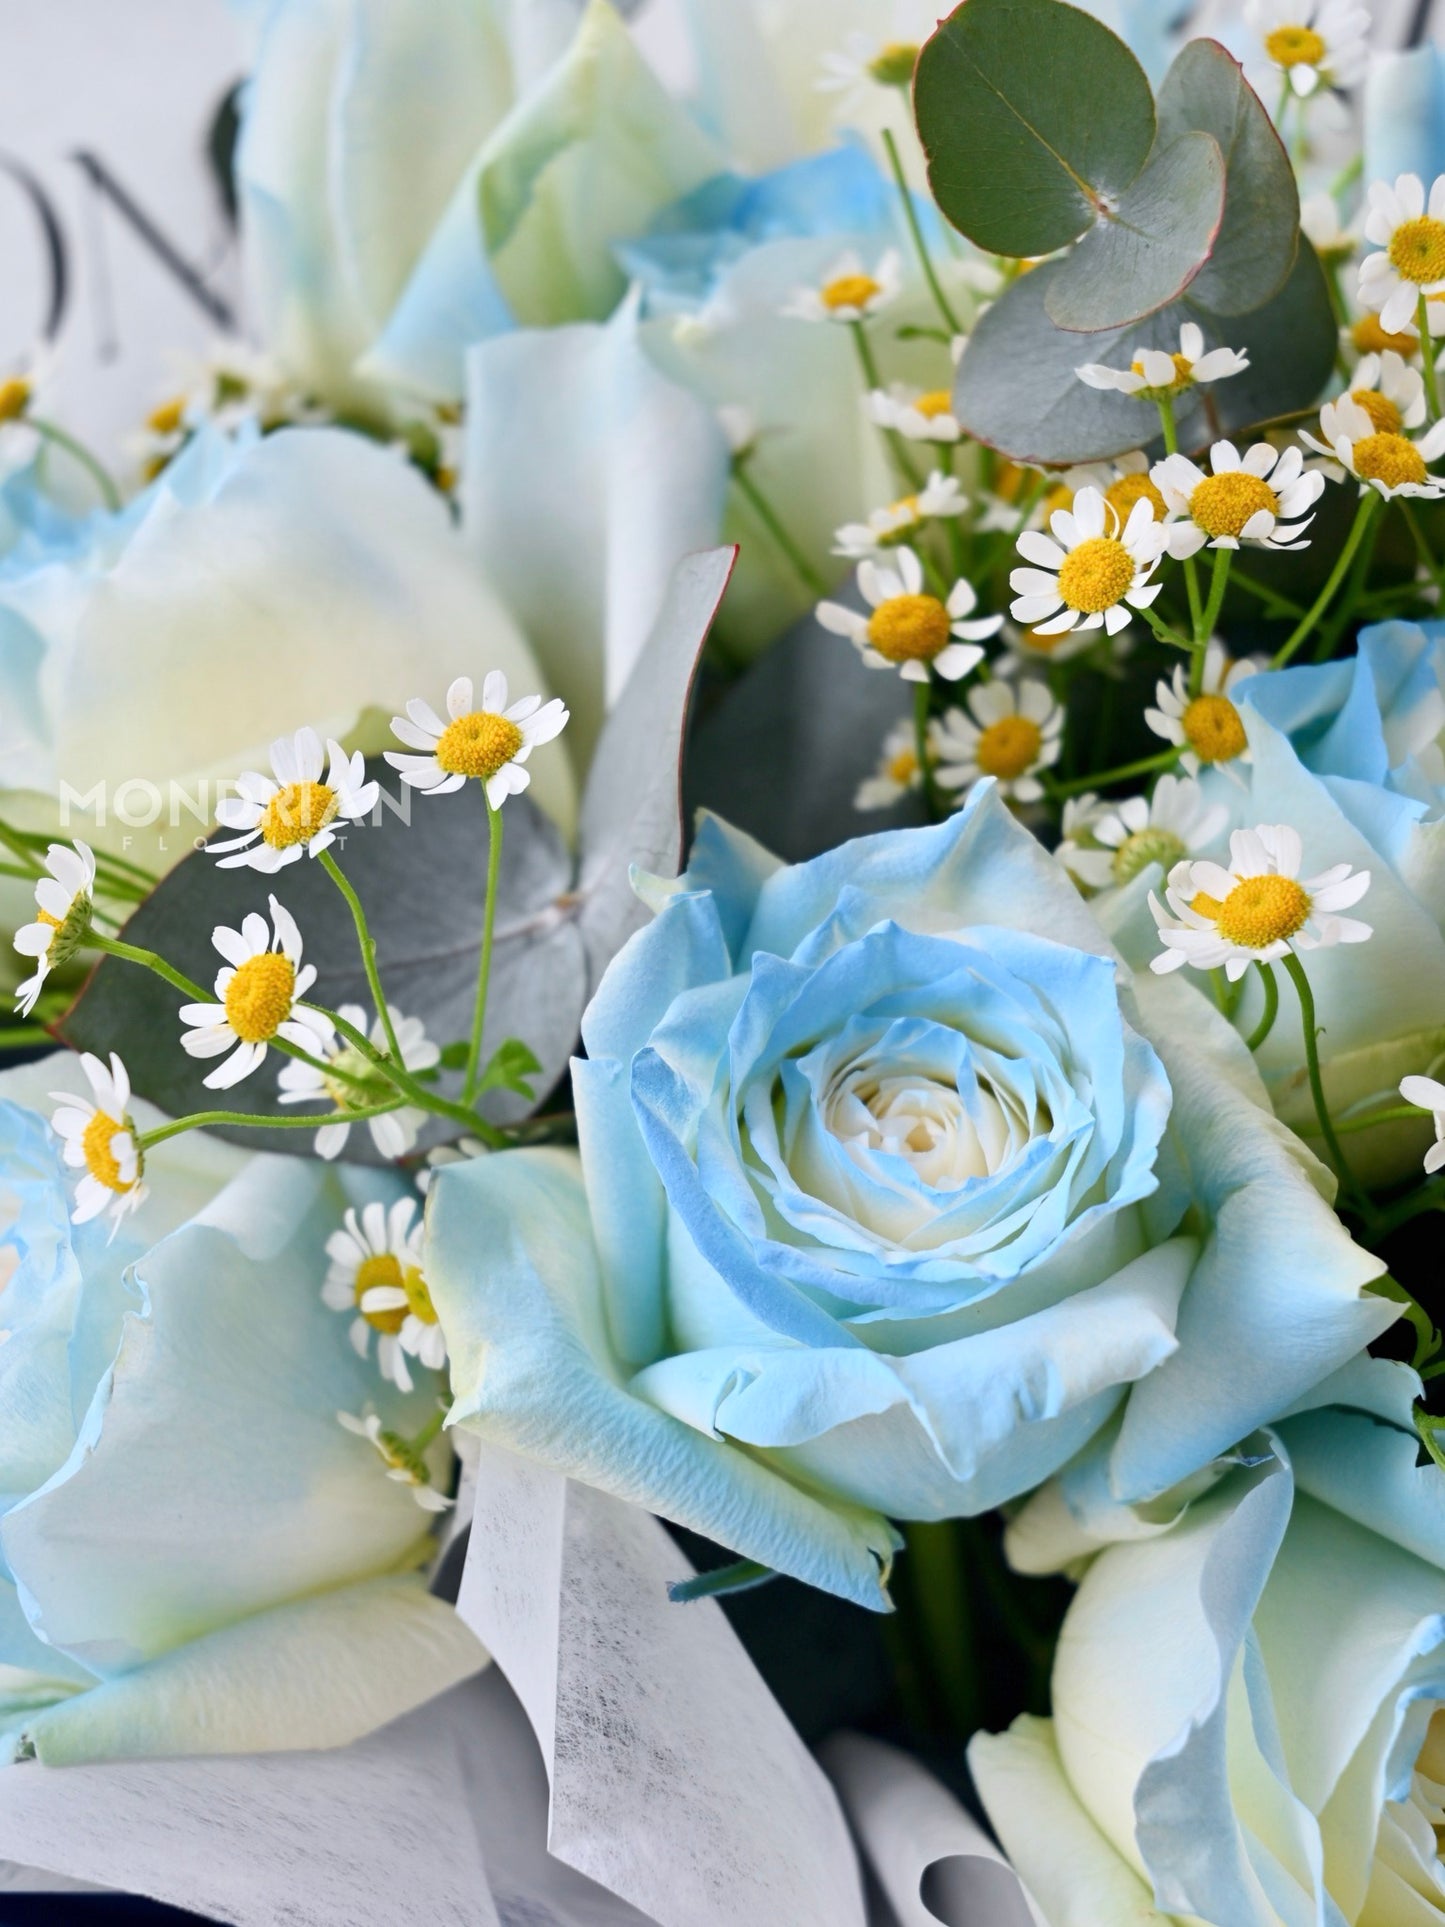 Blue rose Bouquet | anniversary flower delivery | blue rose flower | birthday flower | flower bouquet sg | daisy flower bouquet | Mondrian Florist SG